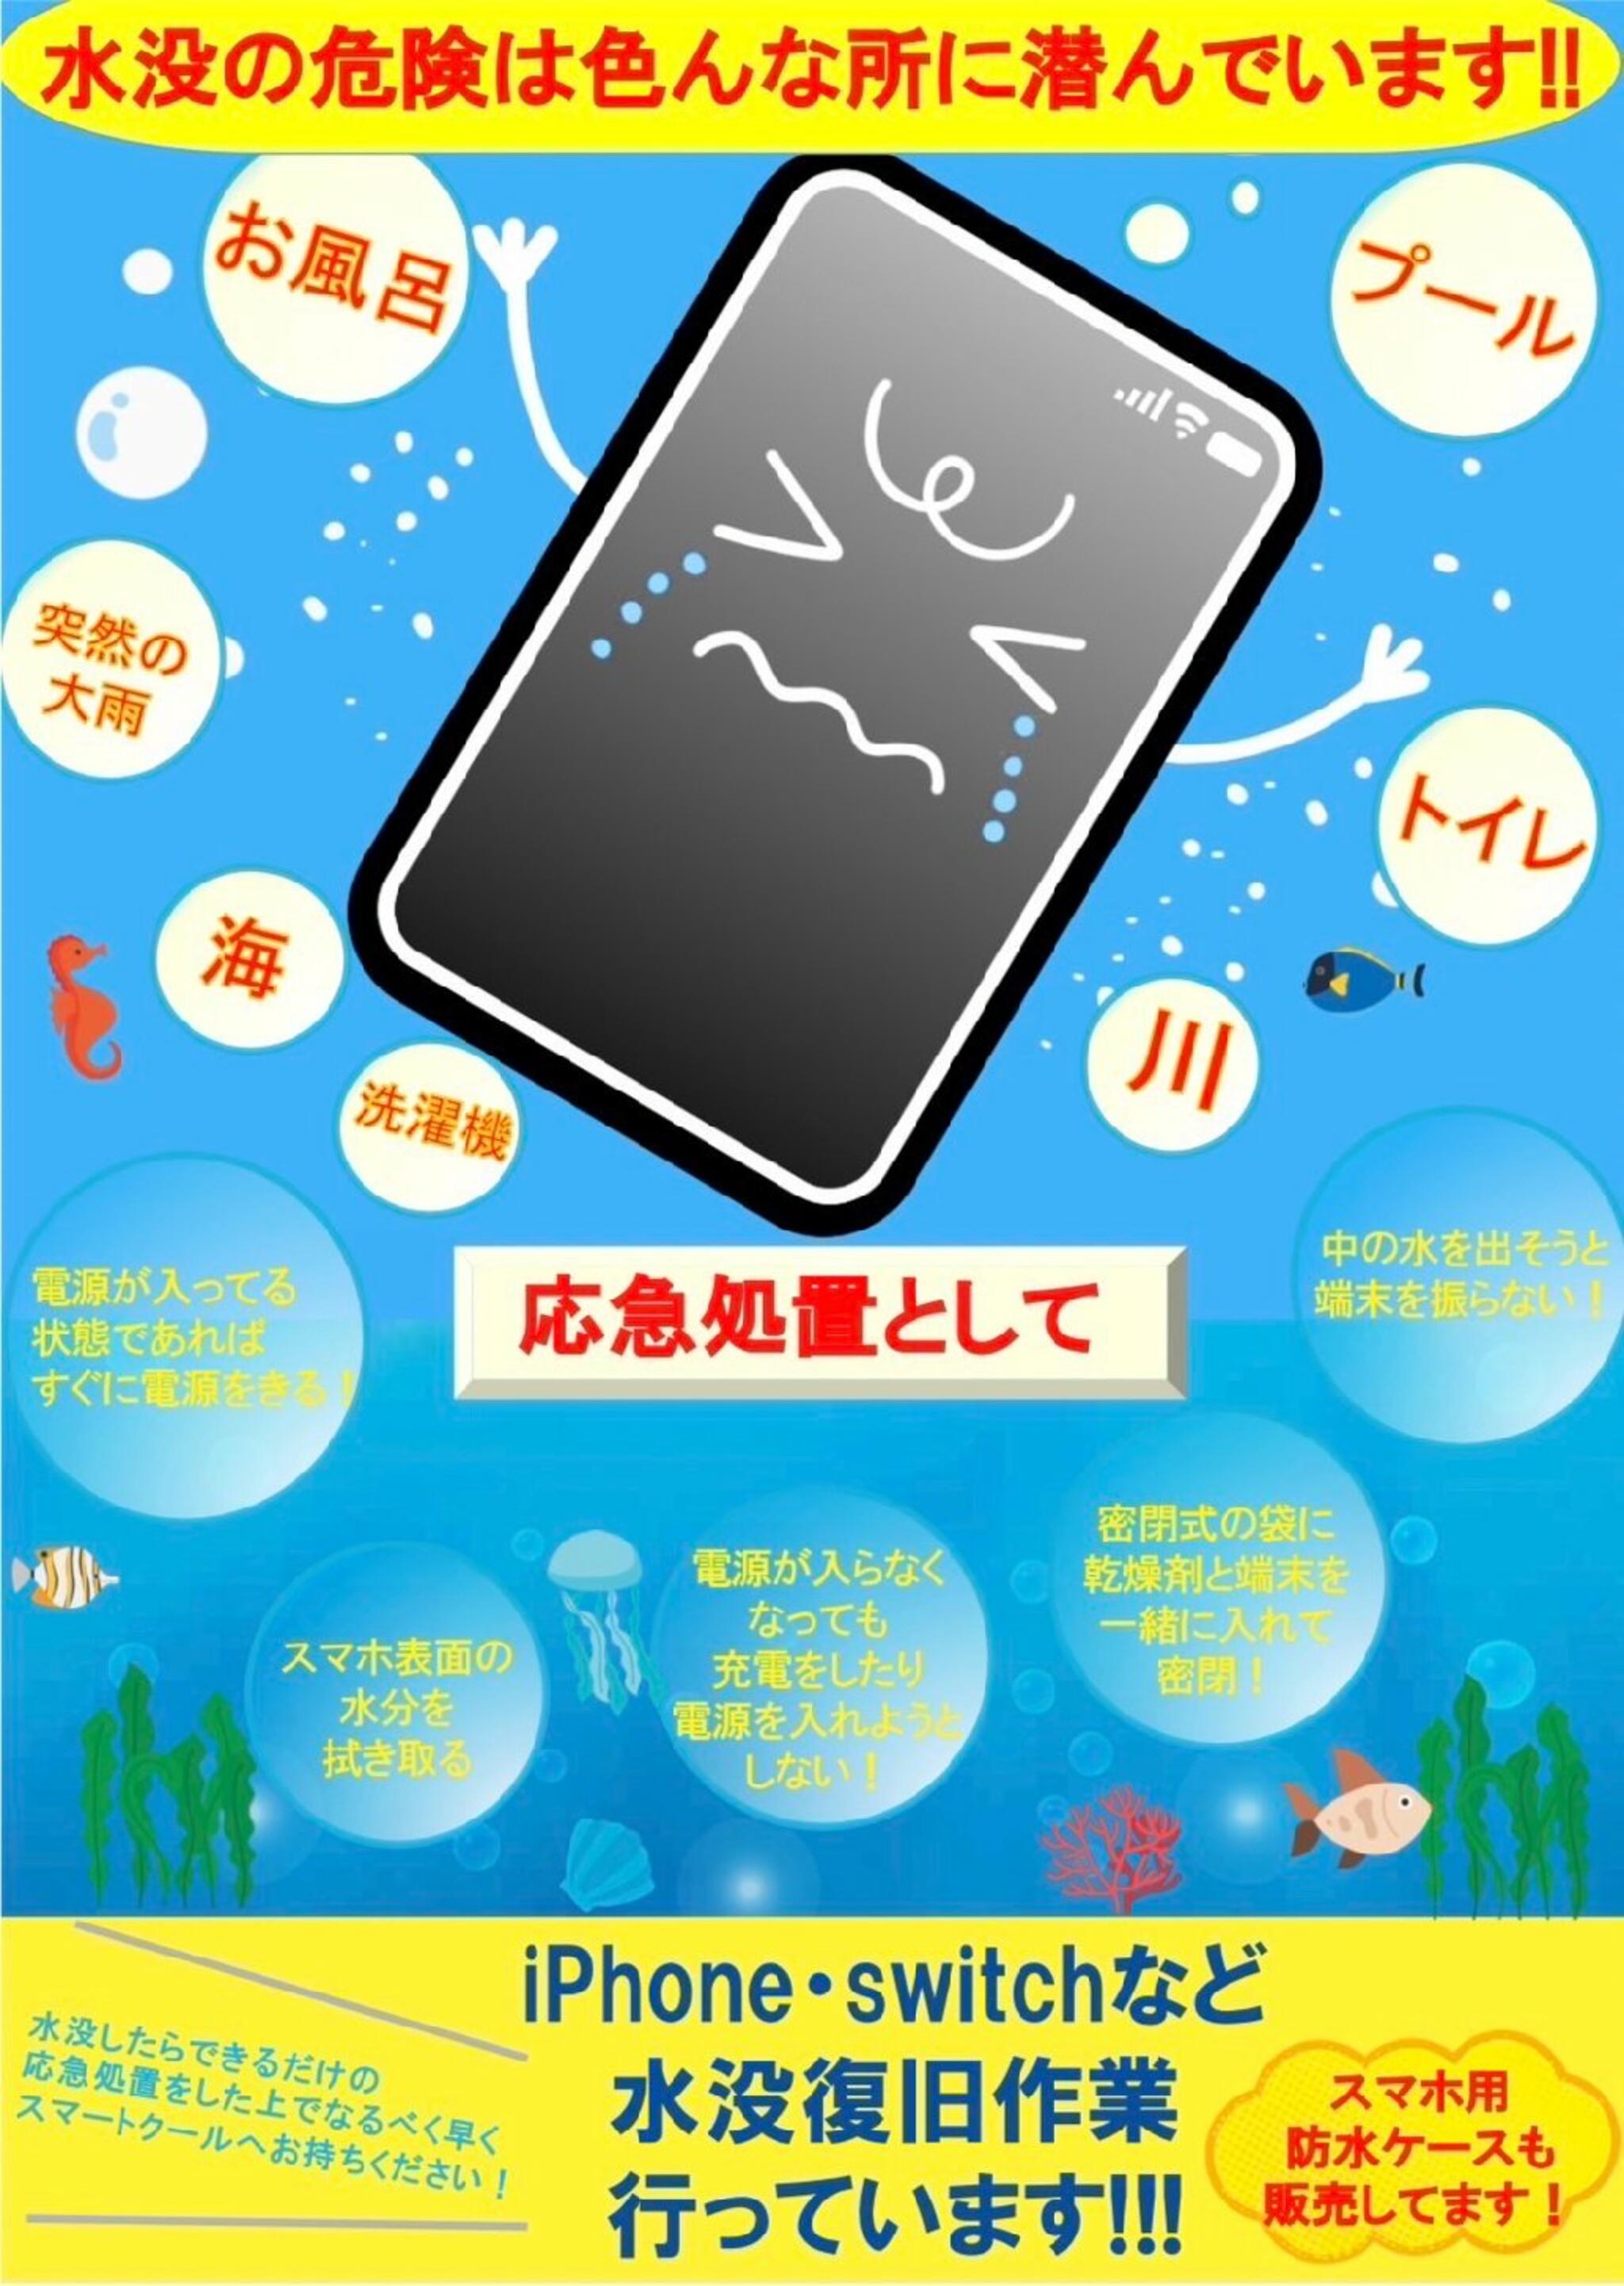 iPhone・iPad・Switch修理店 スマートクール イオンモール広島祇園店からのお知らせ(水没 注意報発令中！水場でのiPhoneの使用はご注意！！)に関する写真